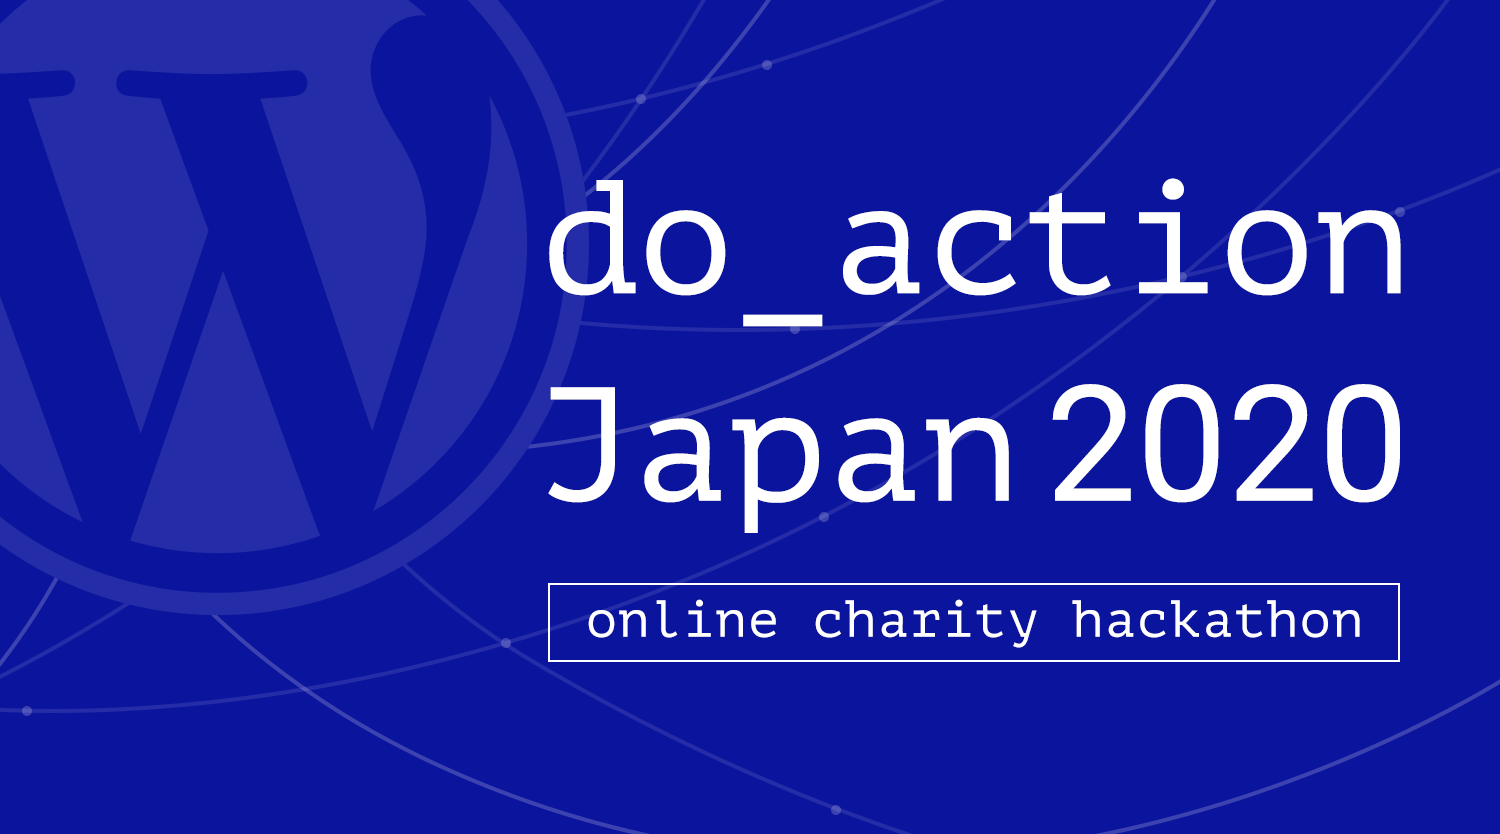 do_action Japan 2020 チャリティハッカソン: カバー画像